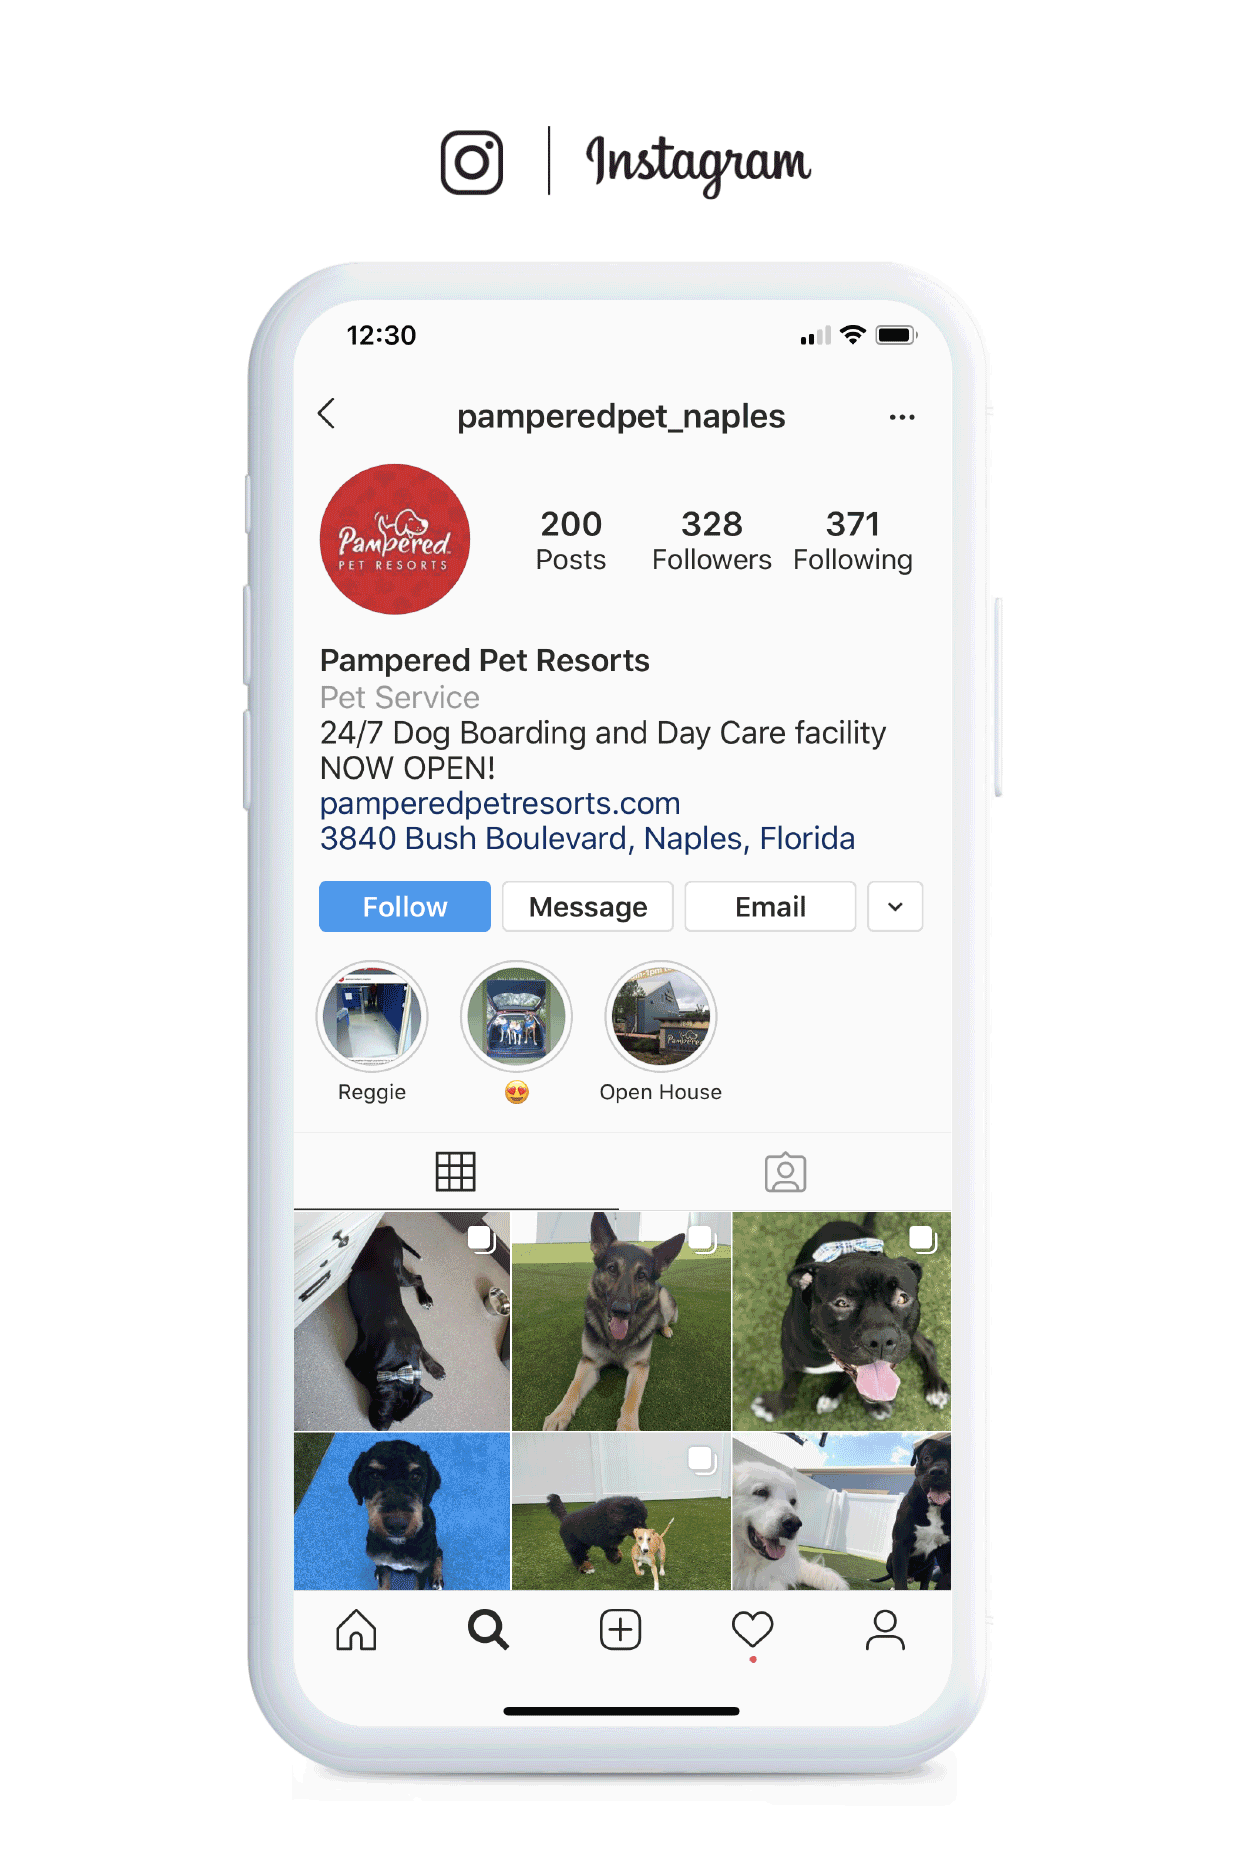 Pampered Pet Resorts - Instagram Social Media Marketing